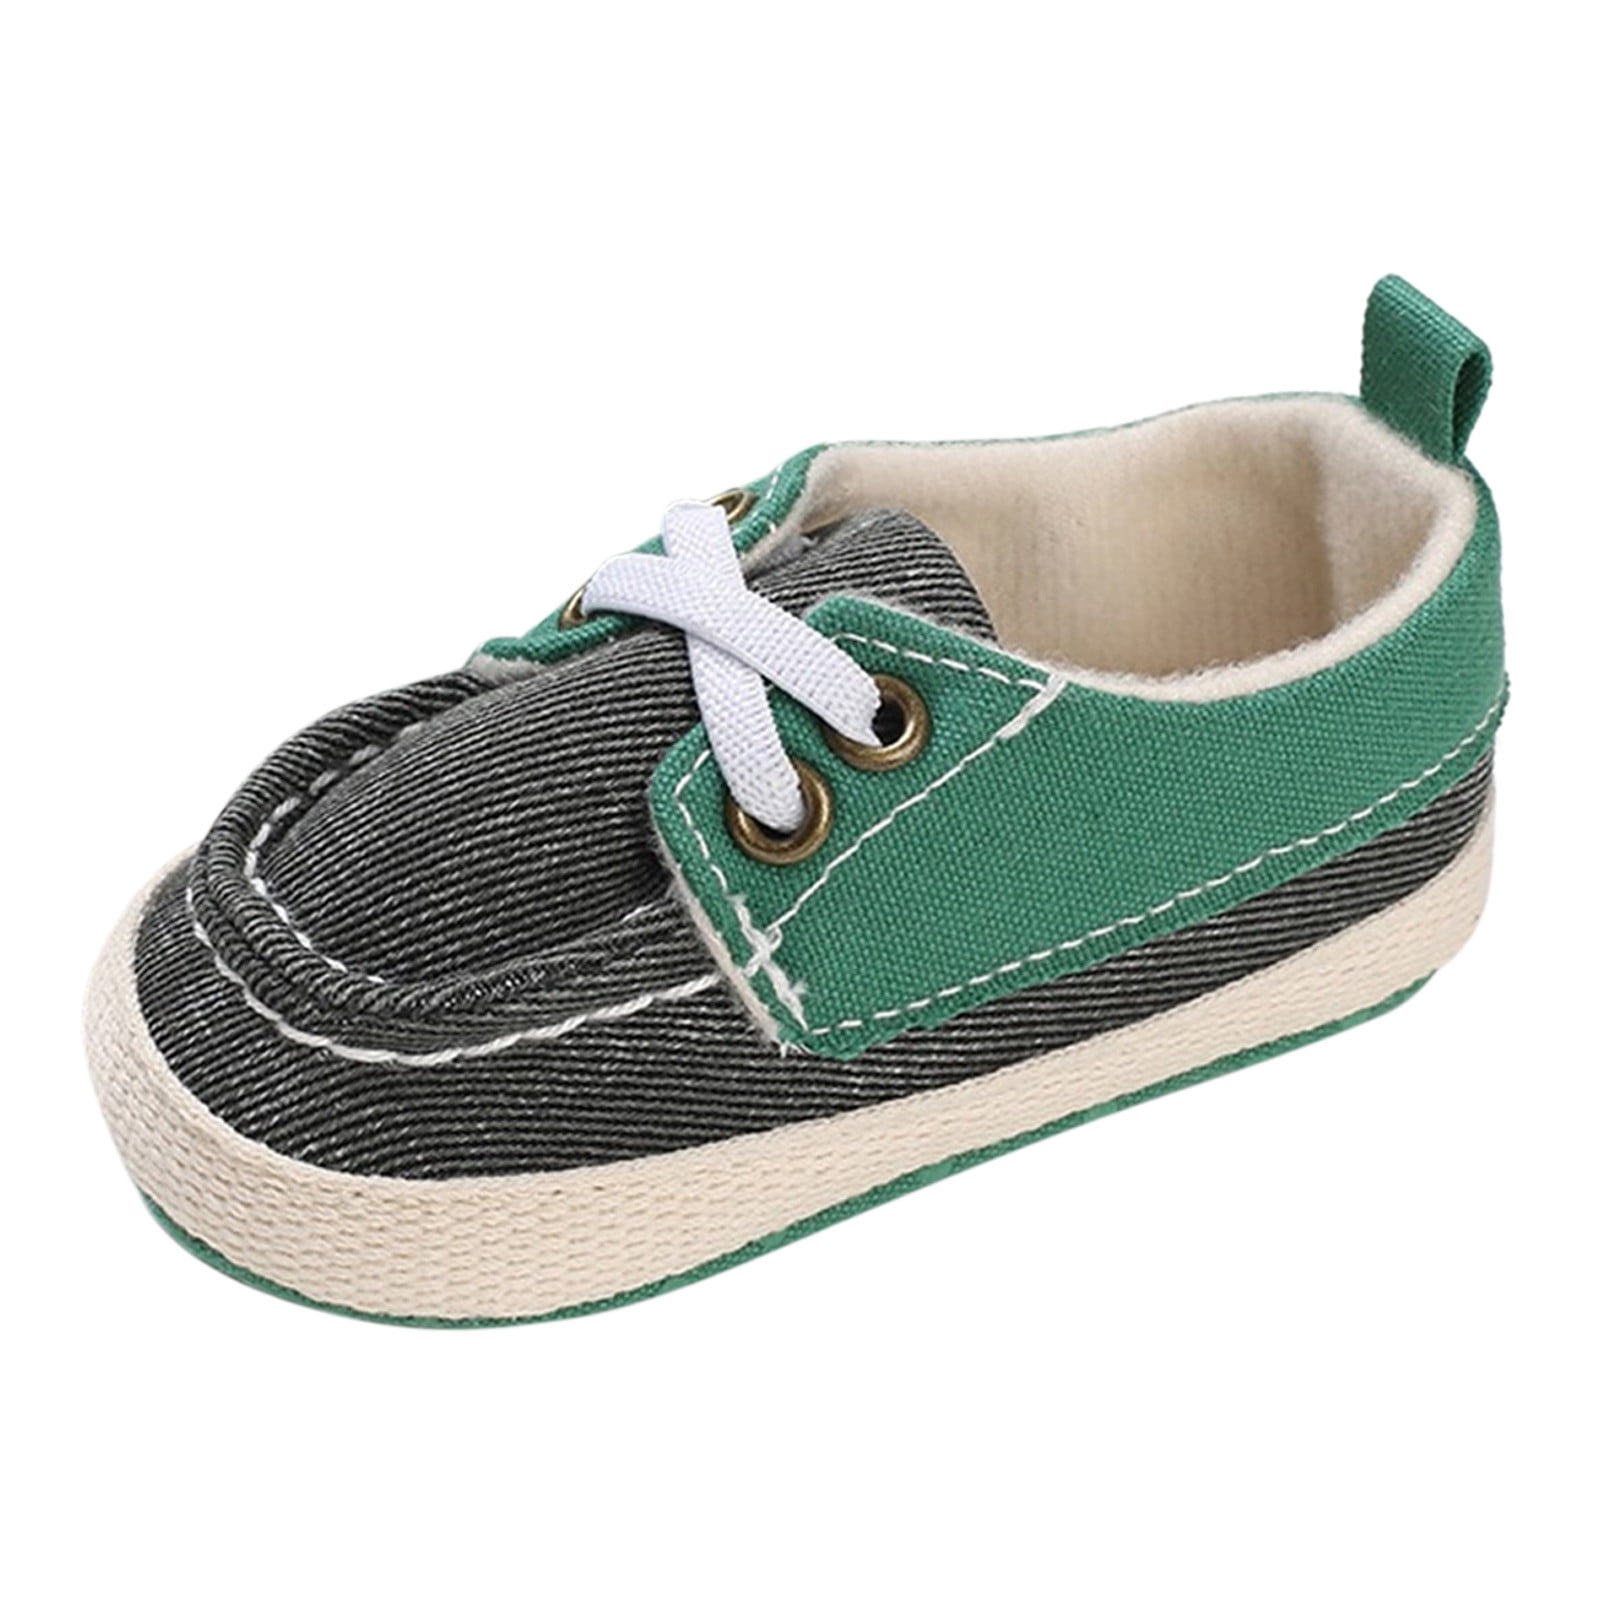 Hbdhejl Soft Shoes For Baby Infant Toddler Children Shoes Spring Summer ...